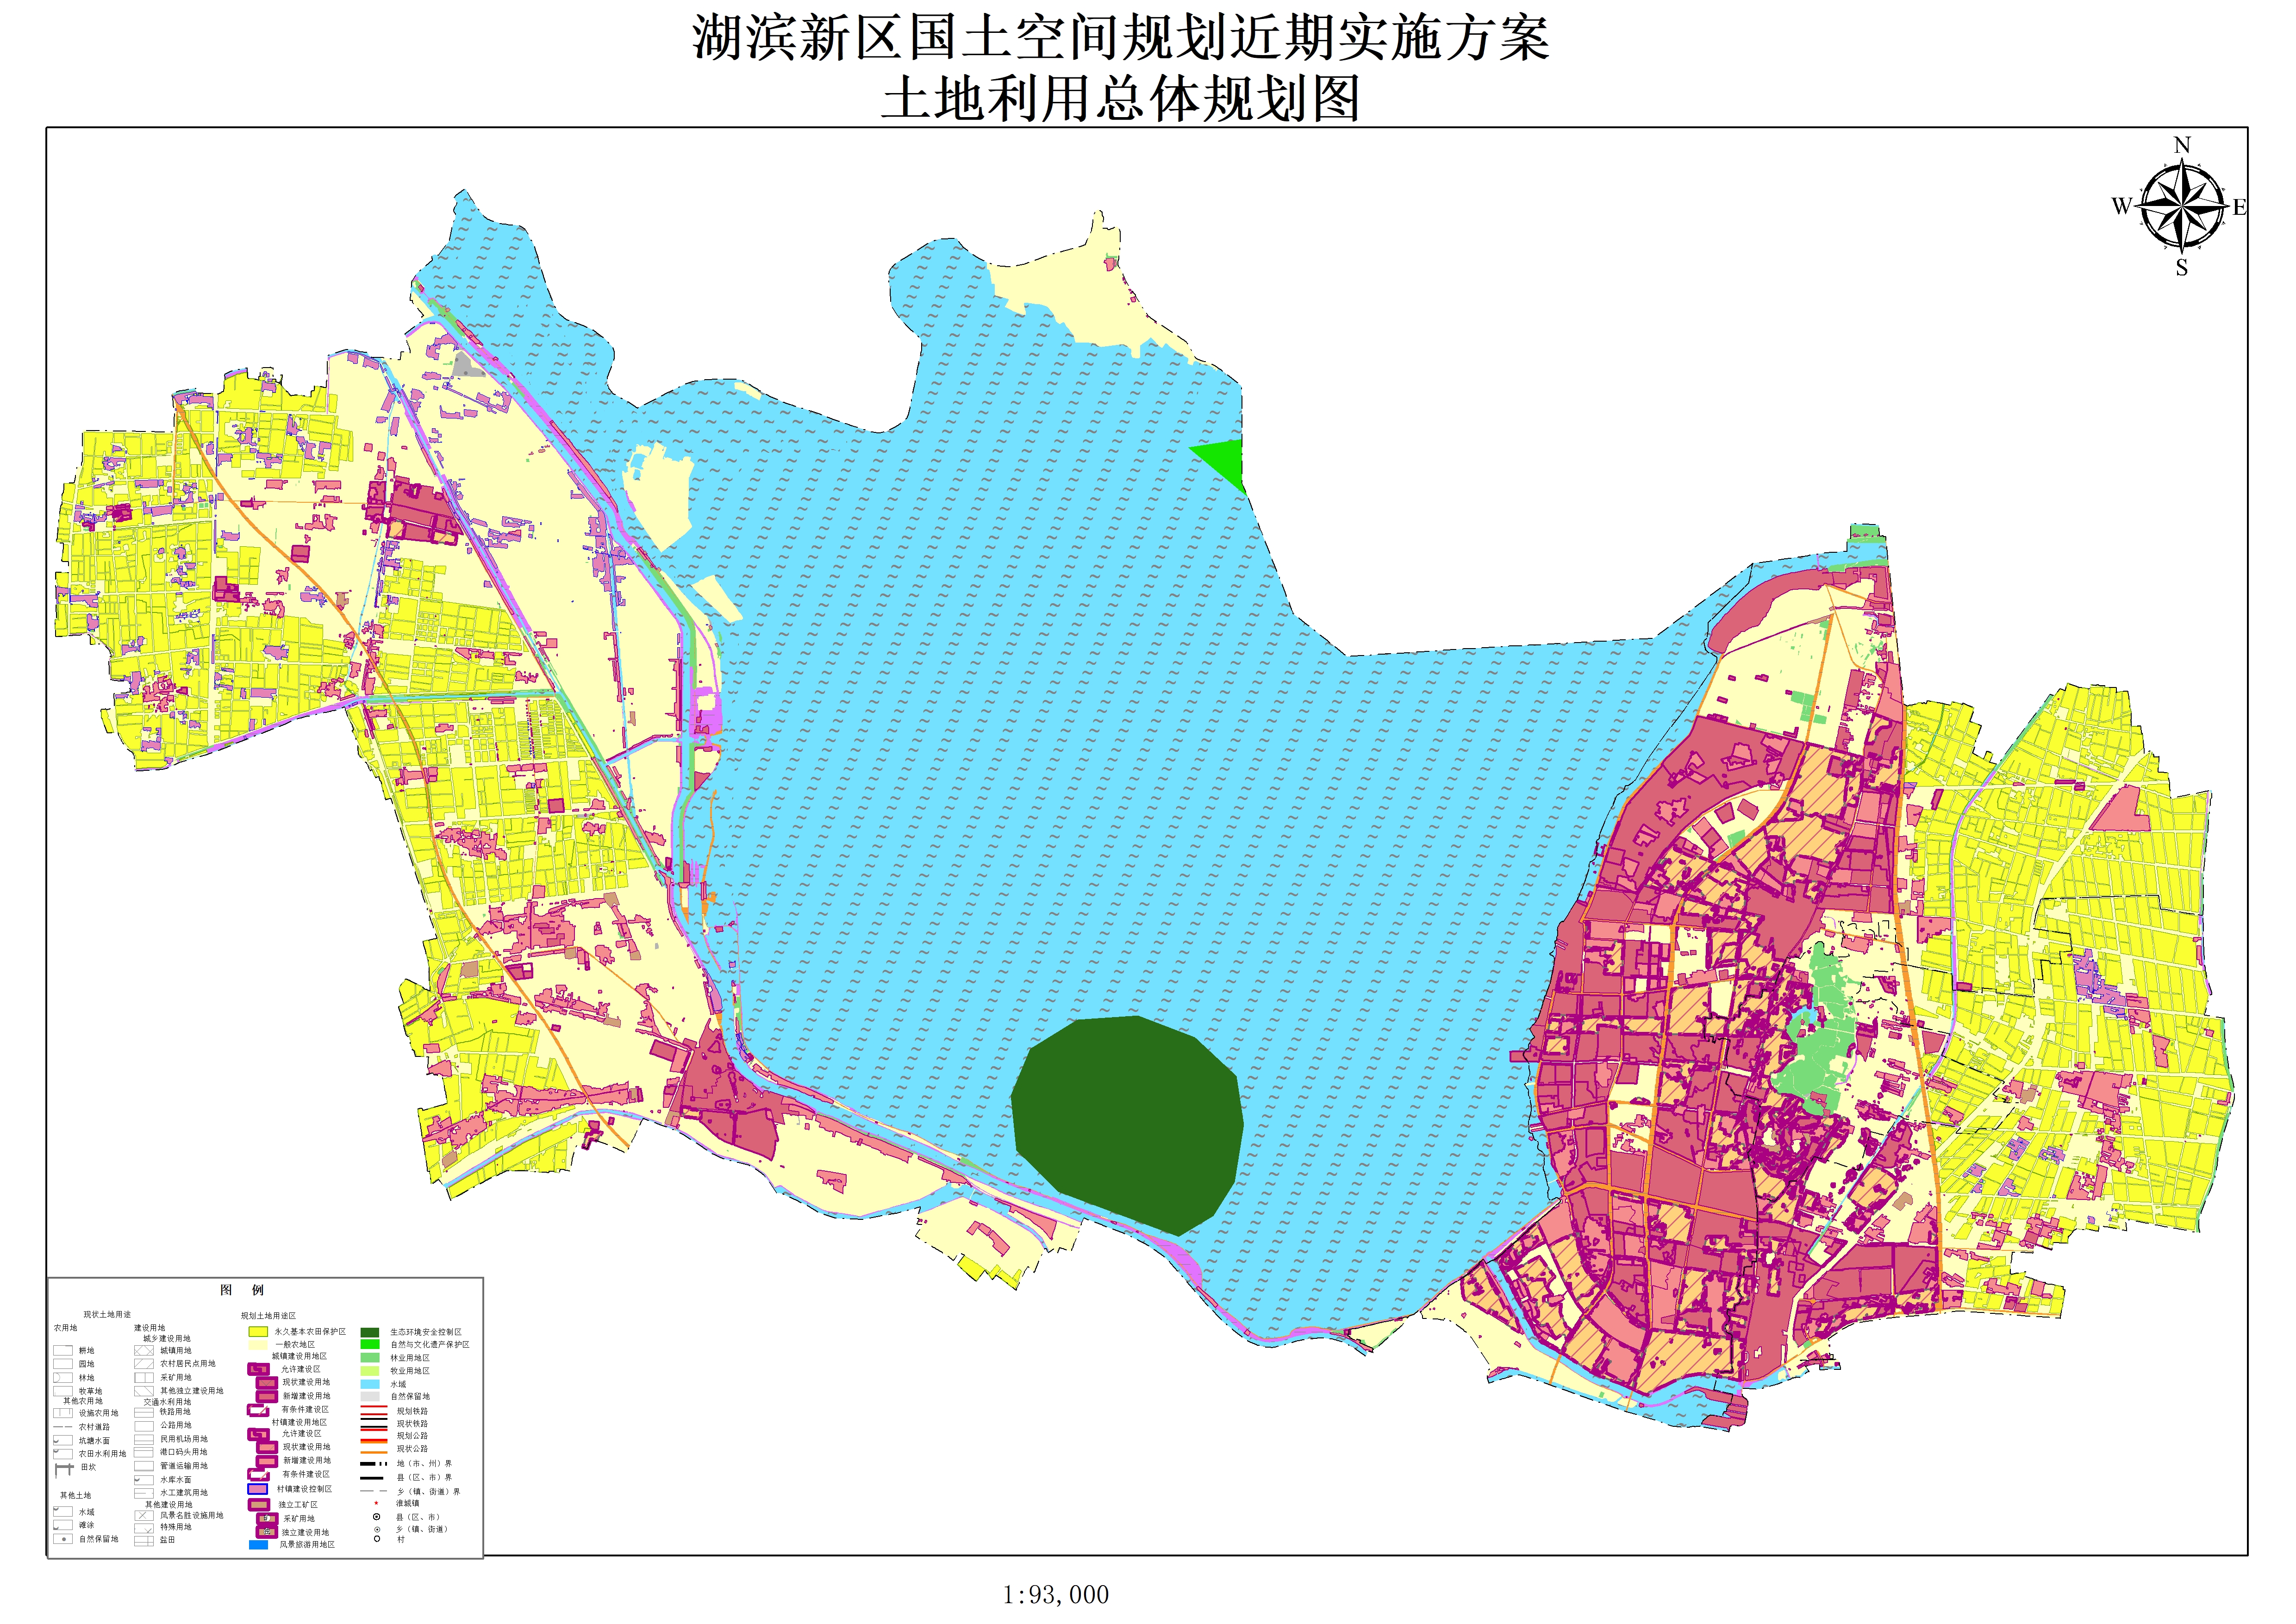 湖滨新区国土空间规划近期实施方案(土地利用总体规划图)